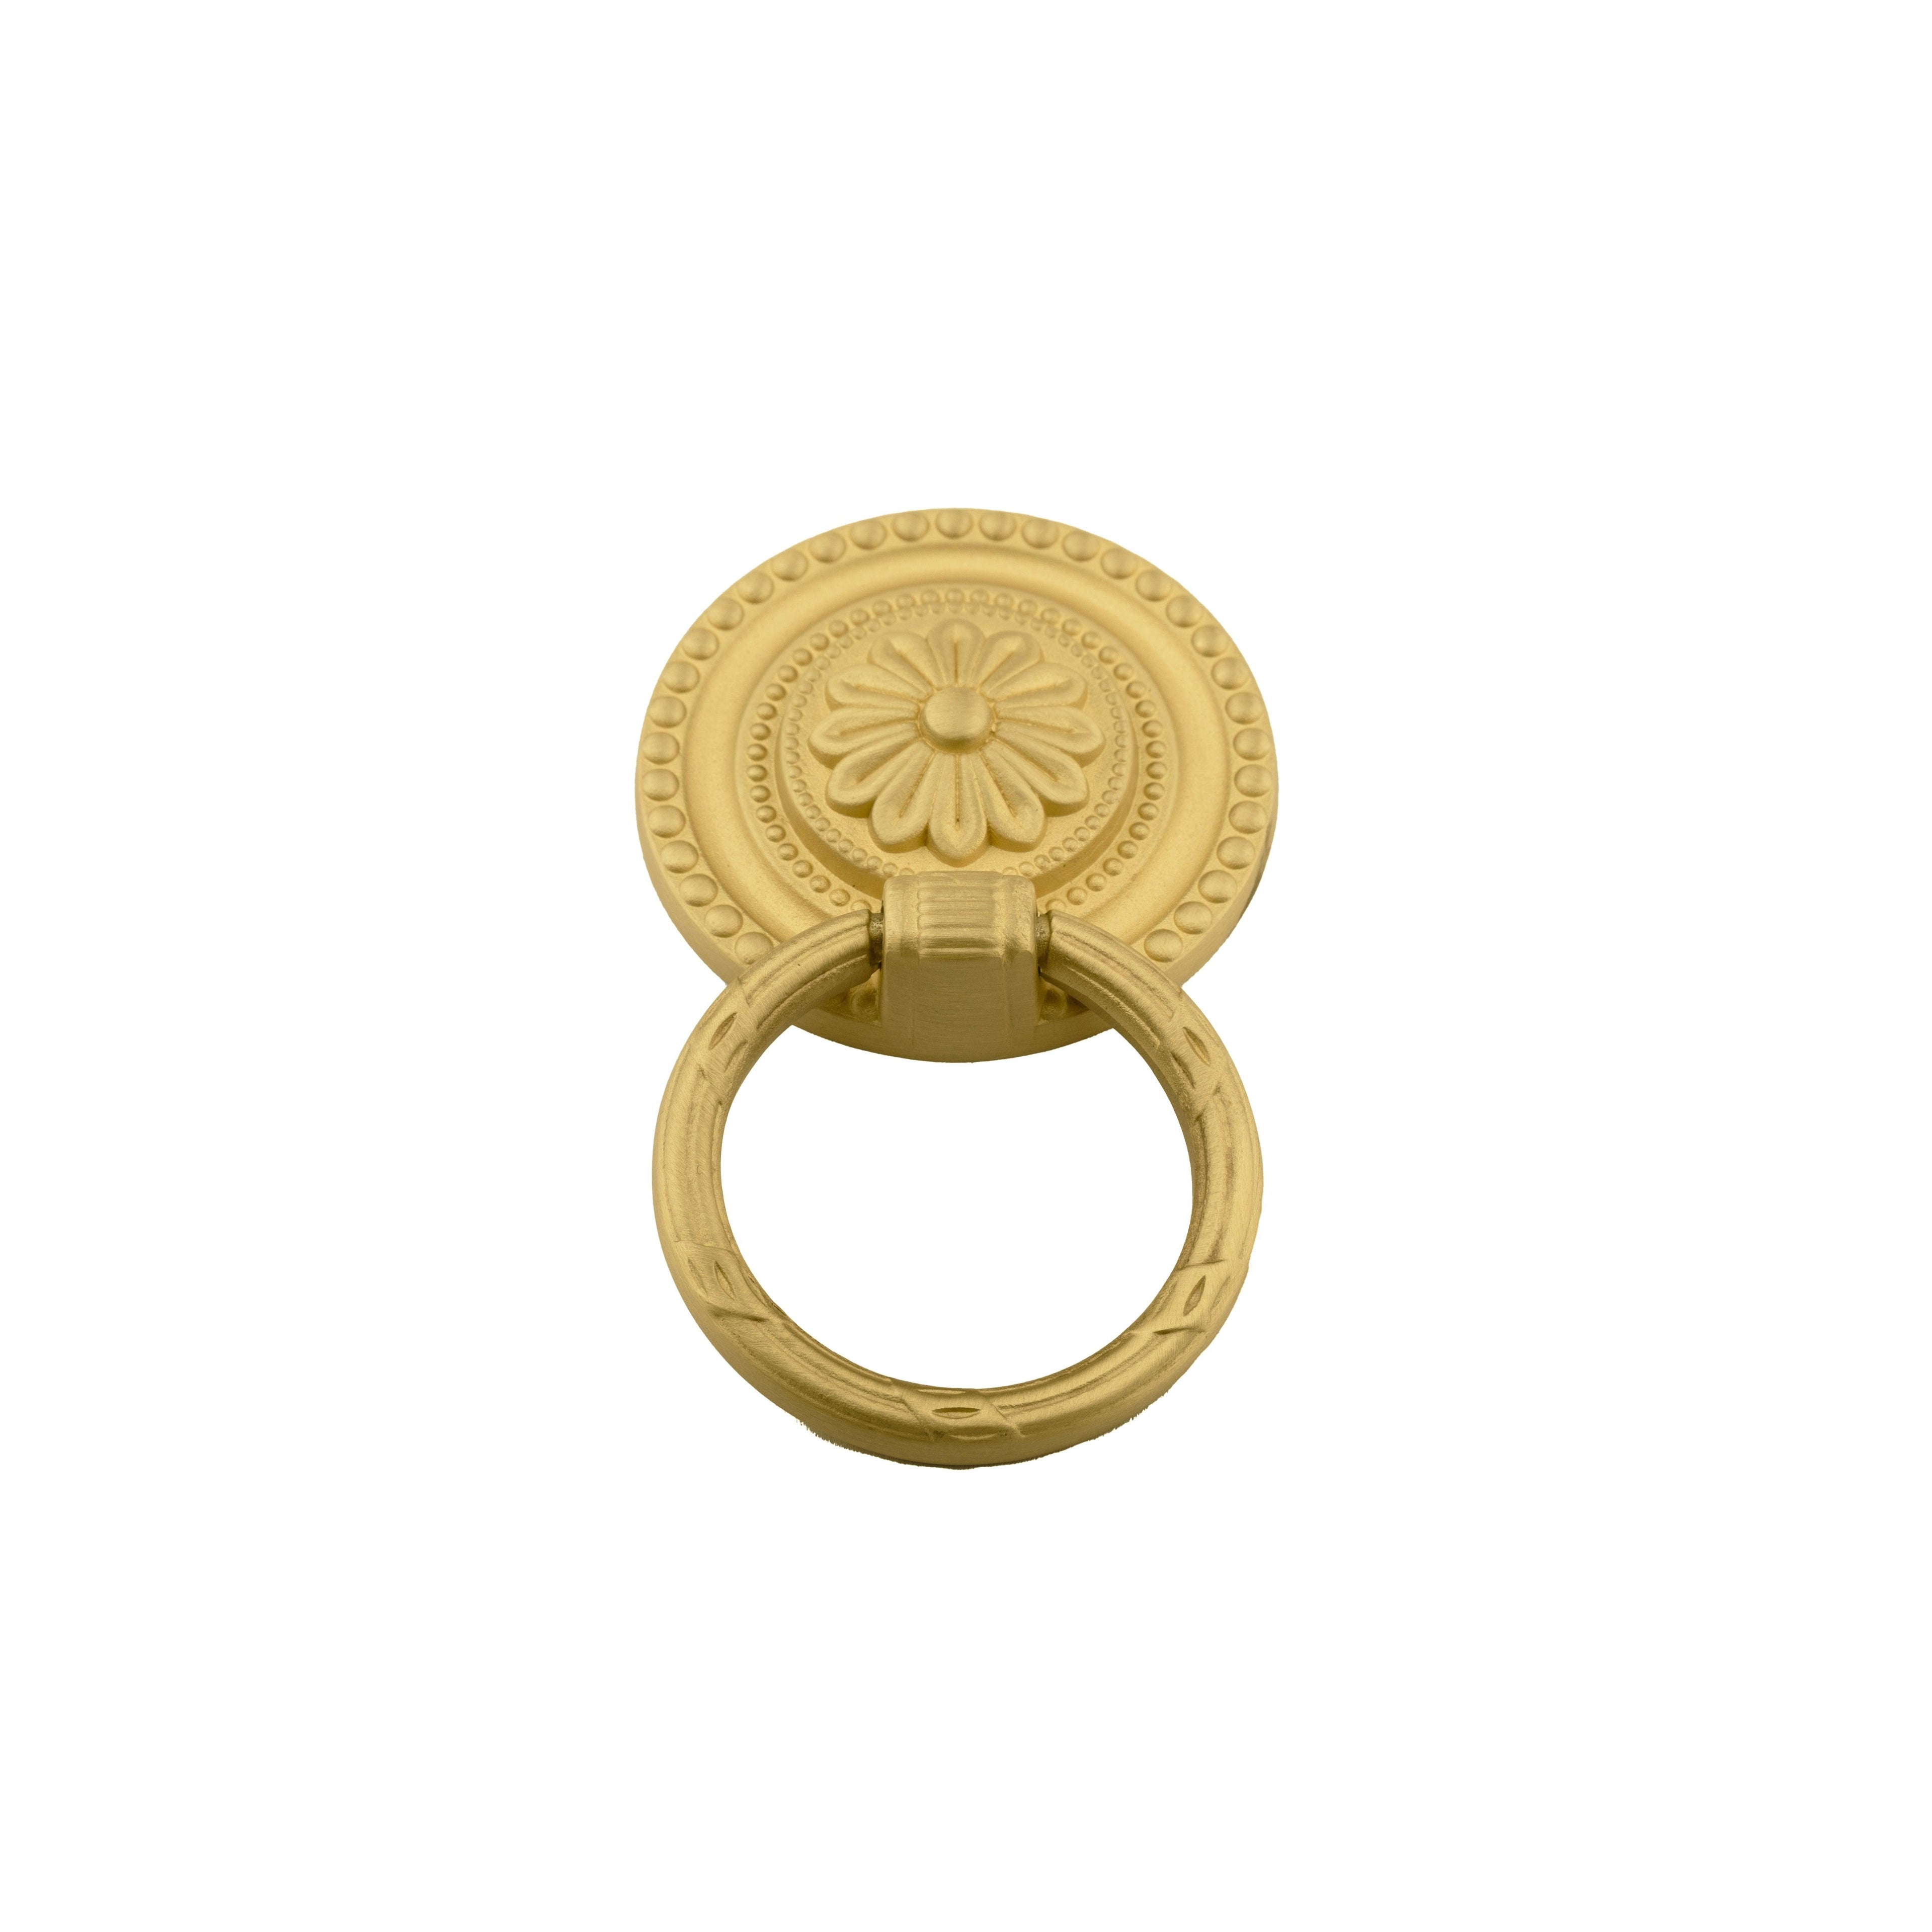 Sovereign Ring Knob Knob - M A N T A R A